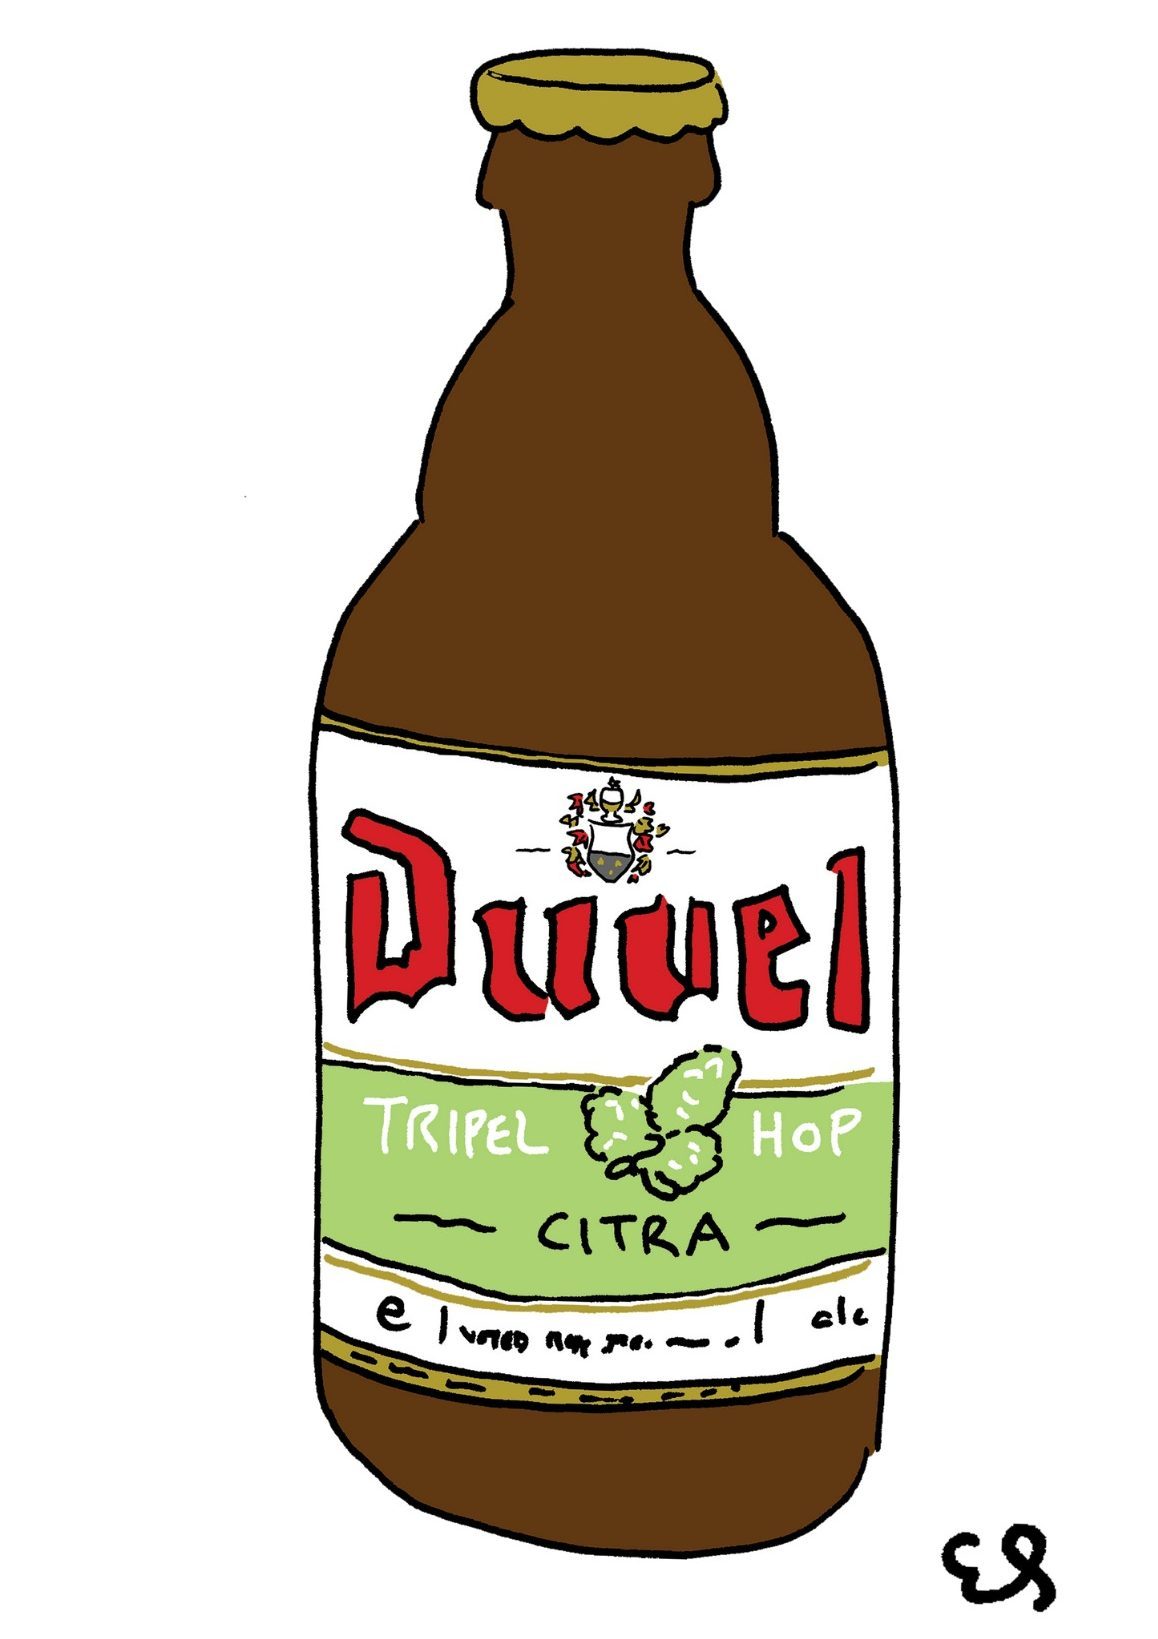 Belgian Beer Duvel Tripel Hop